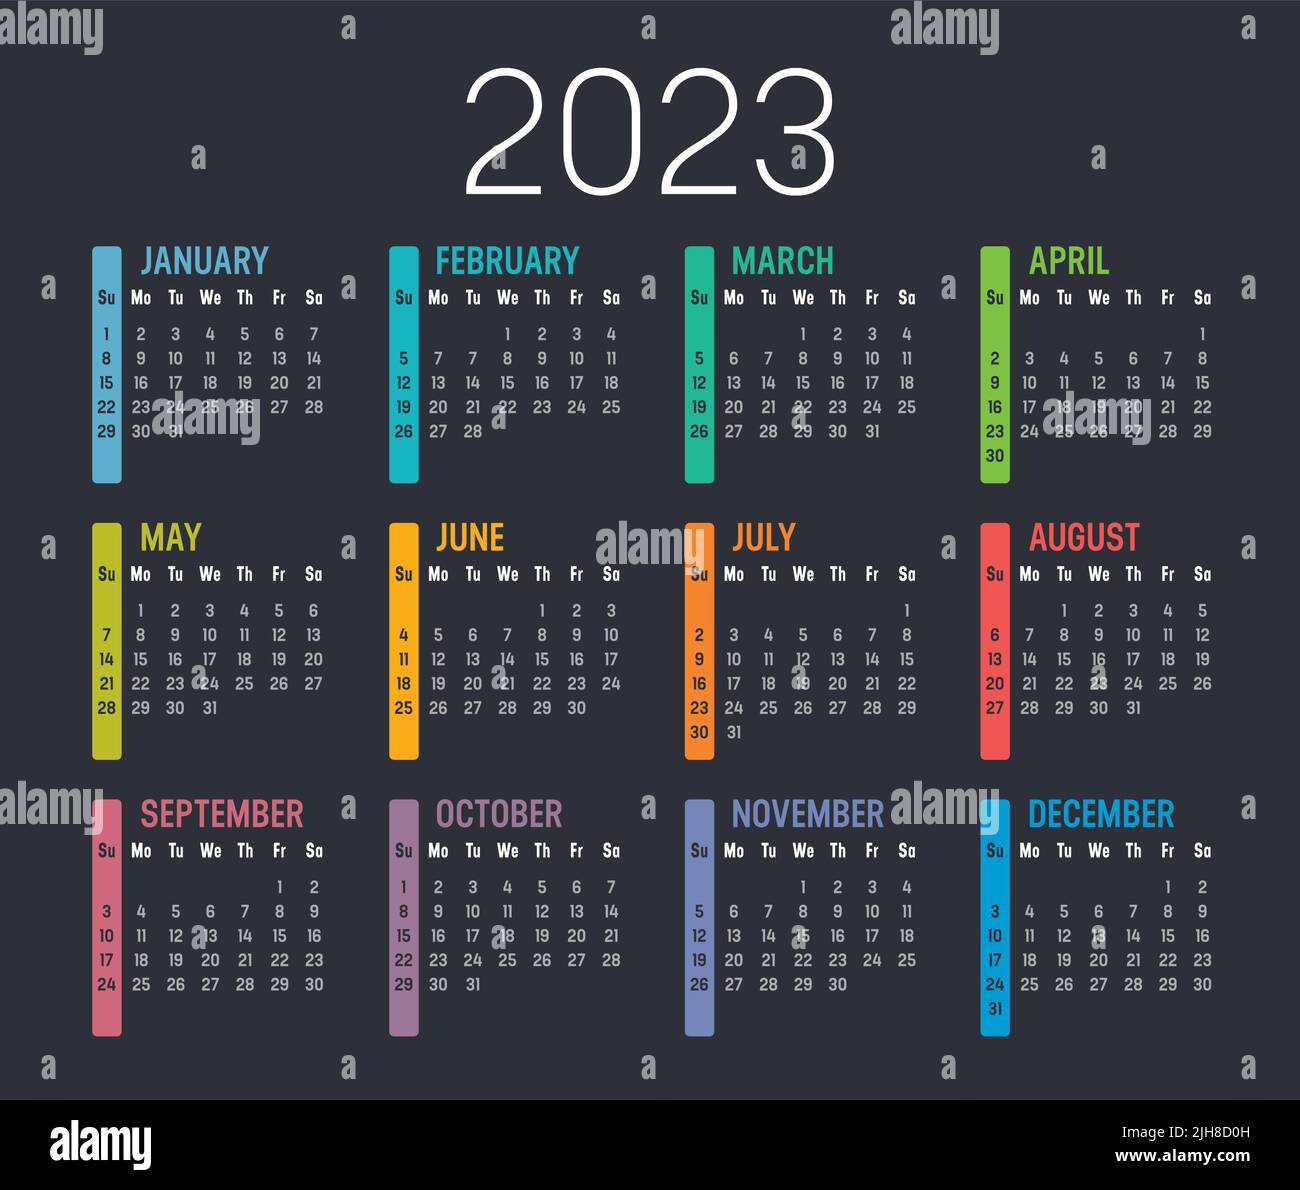 Calendario colorato dell'anno 2023, isolato su sfondo scuro. Modello vettoriale. Illustrazione Vettoriale